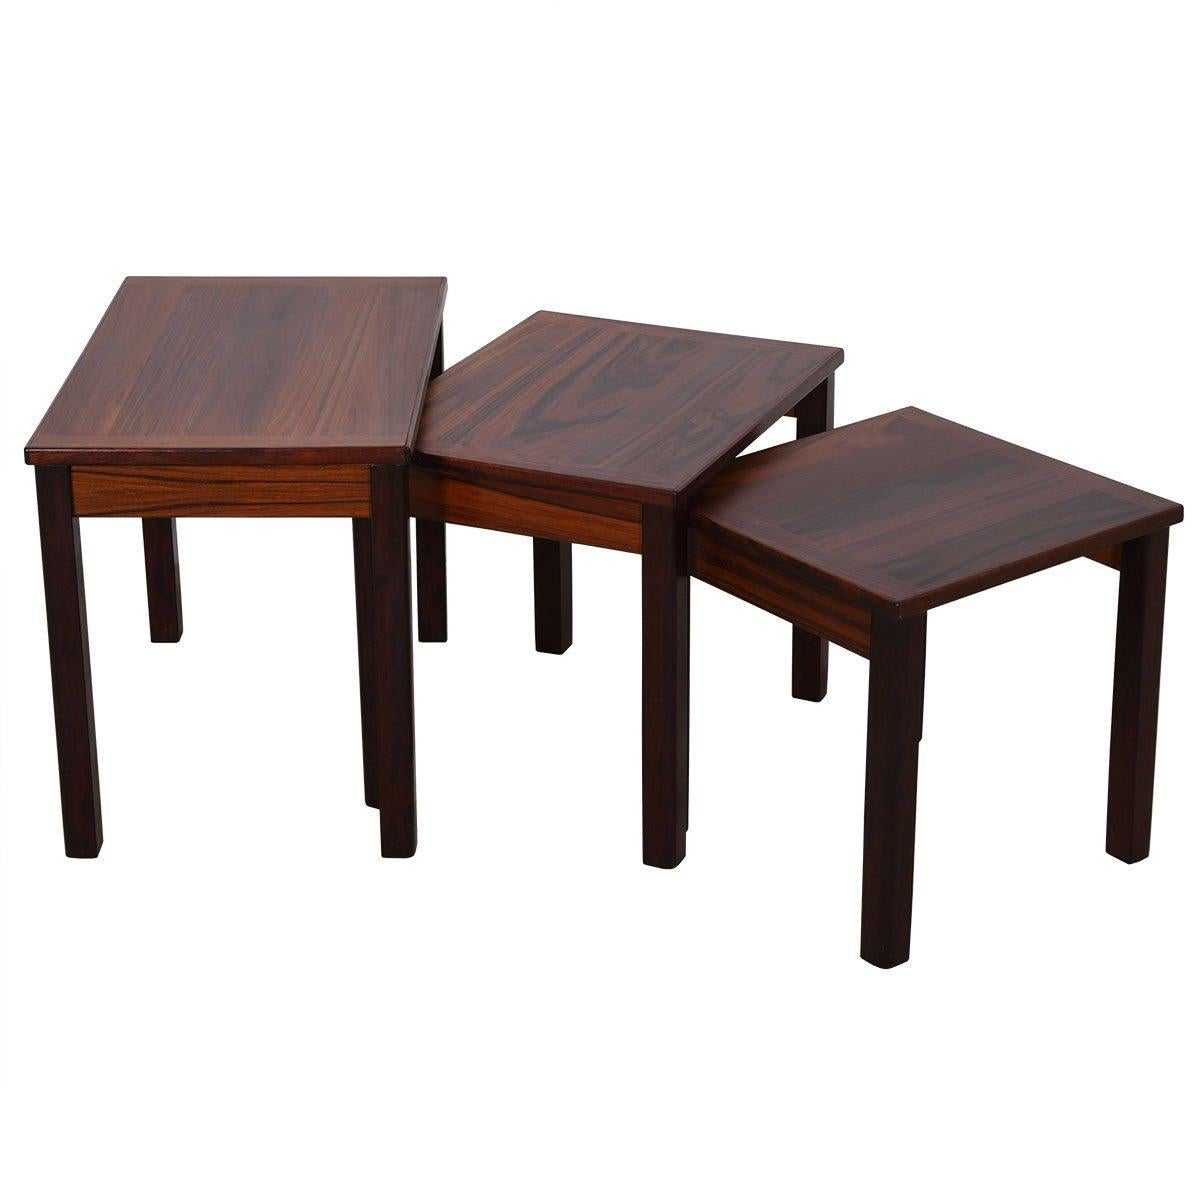 Voici un magnifique et solide ensemble de trois tables gigognes en bois de rose. Très pratique à avoir dans une pièce pour les moments où l'on a besoin d'une surface de table supplémentaire. Facile à ranger et à déplacer. Le bois de rose a pris une